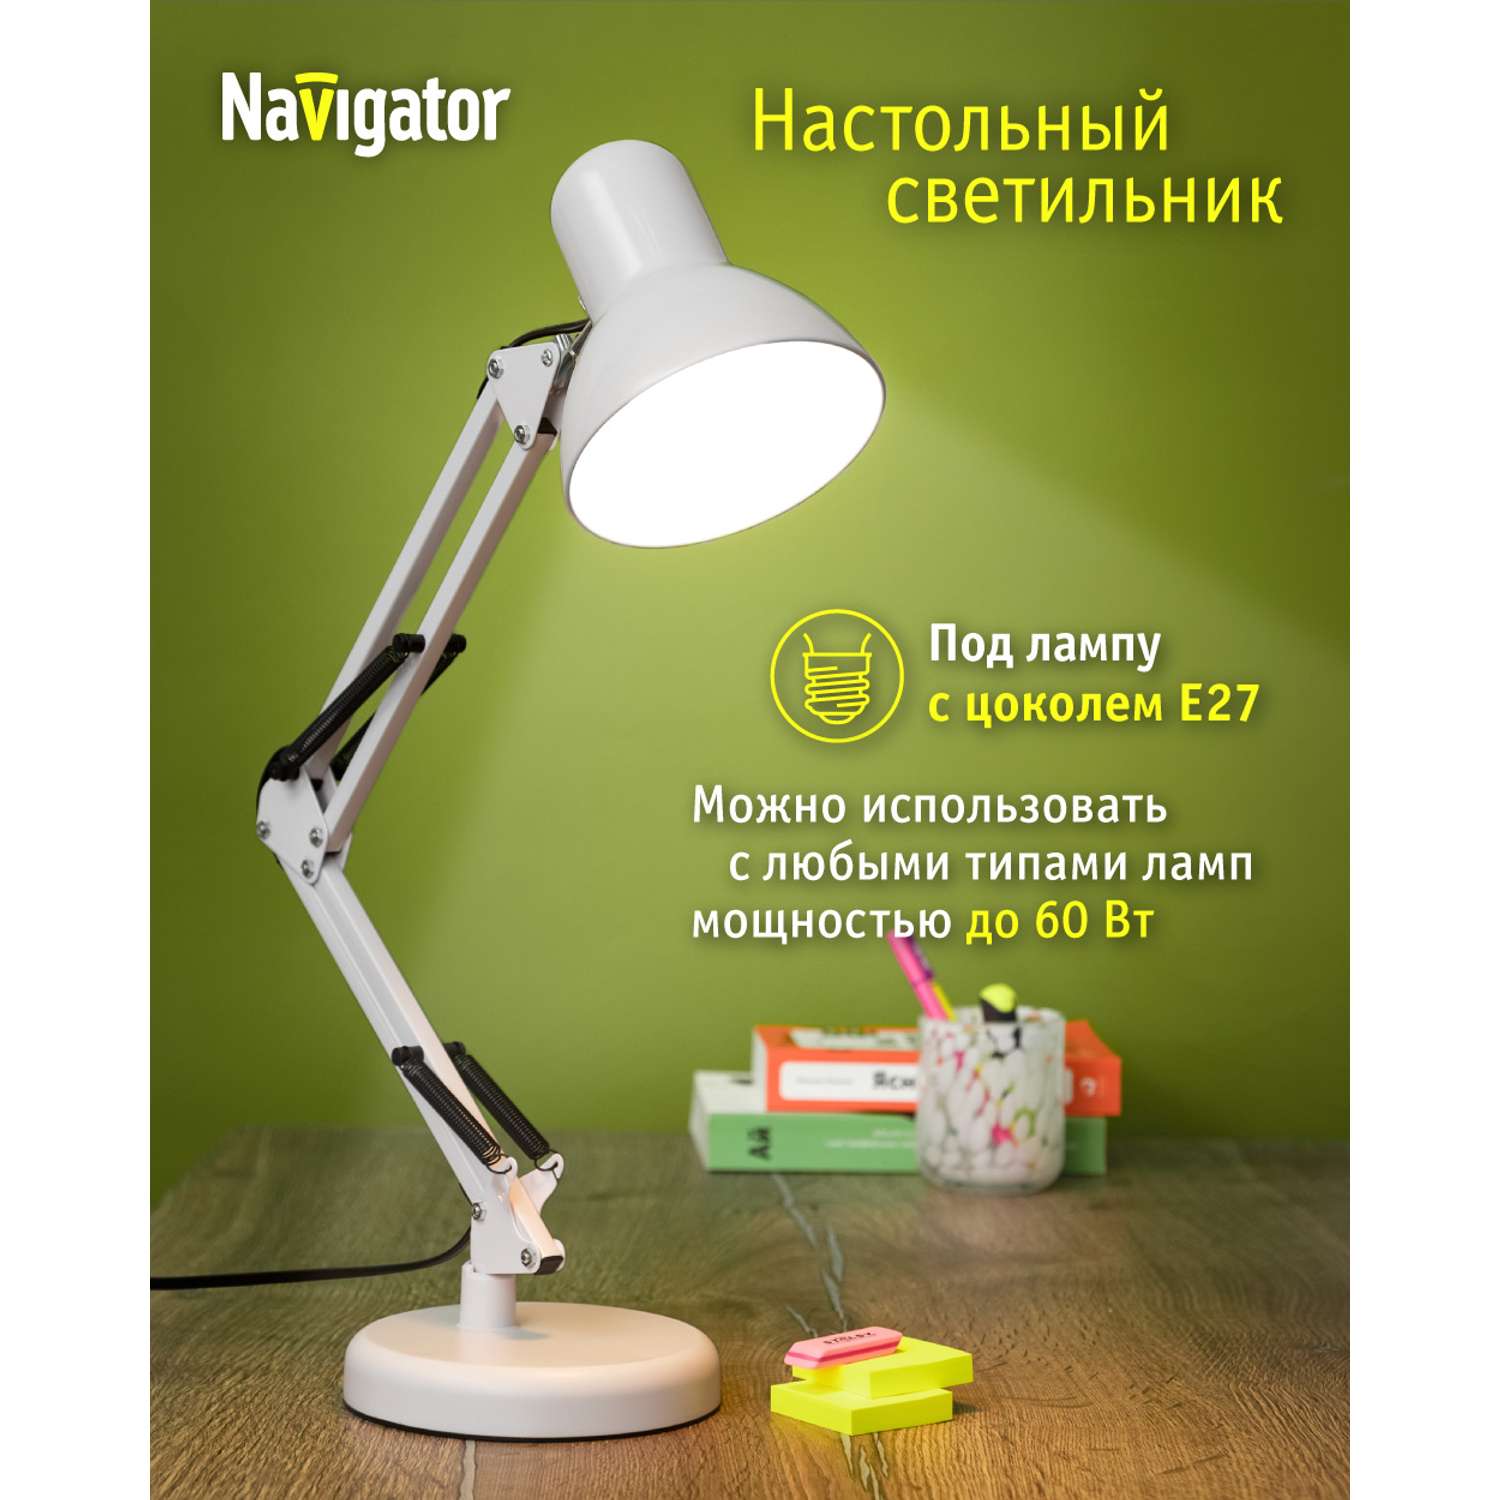 Лампа настольная navigator белый под лампу с цоколем Е27 - фото 1